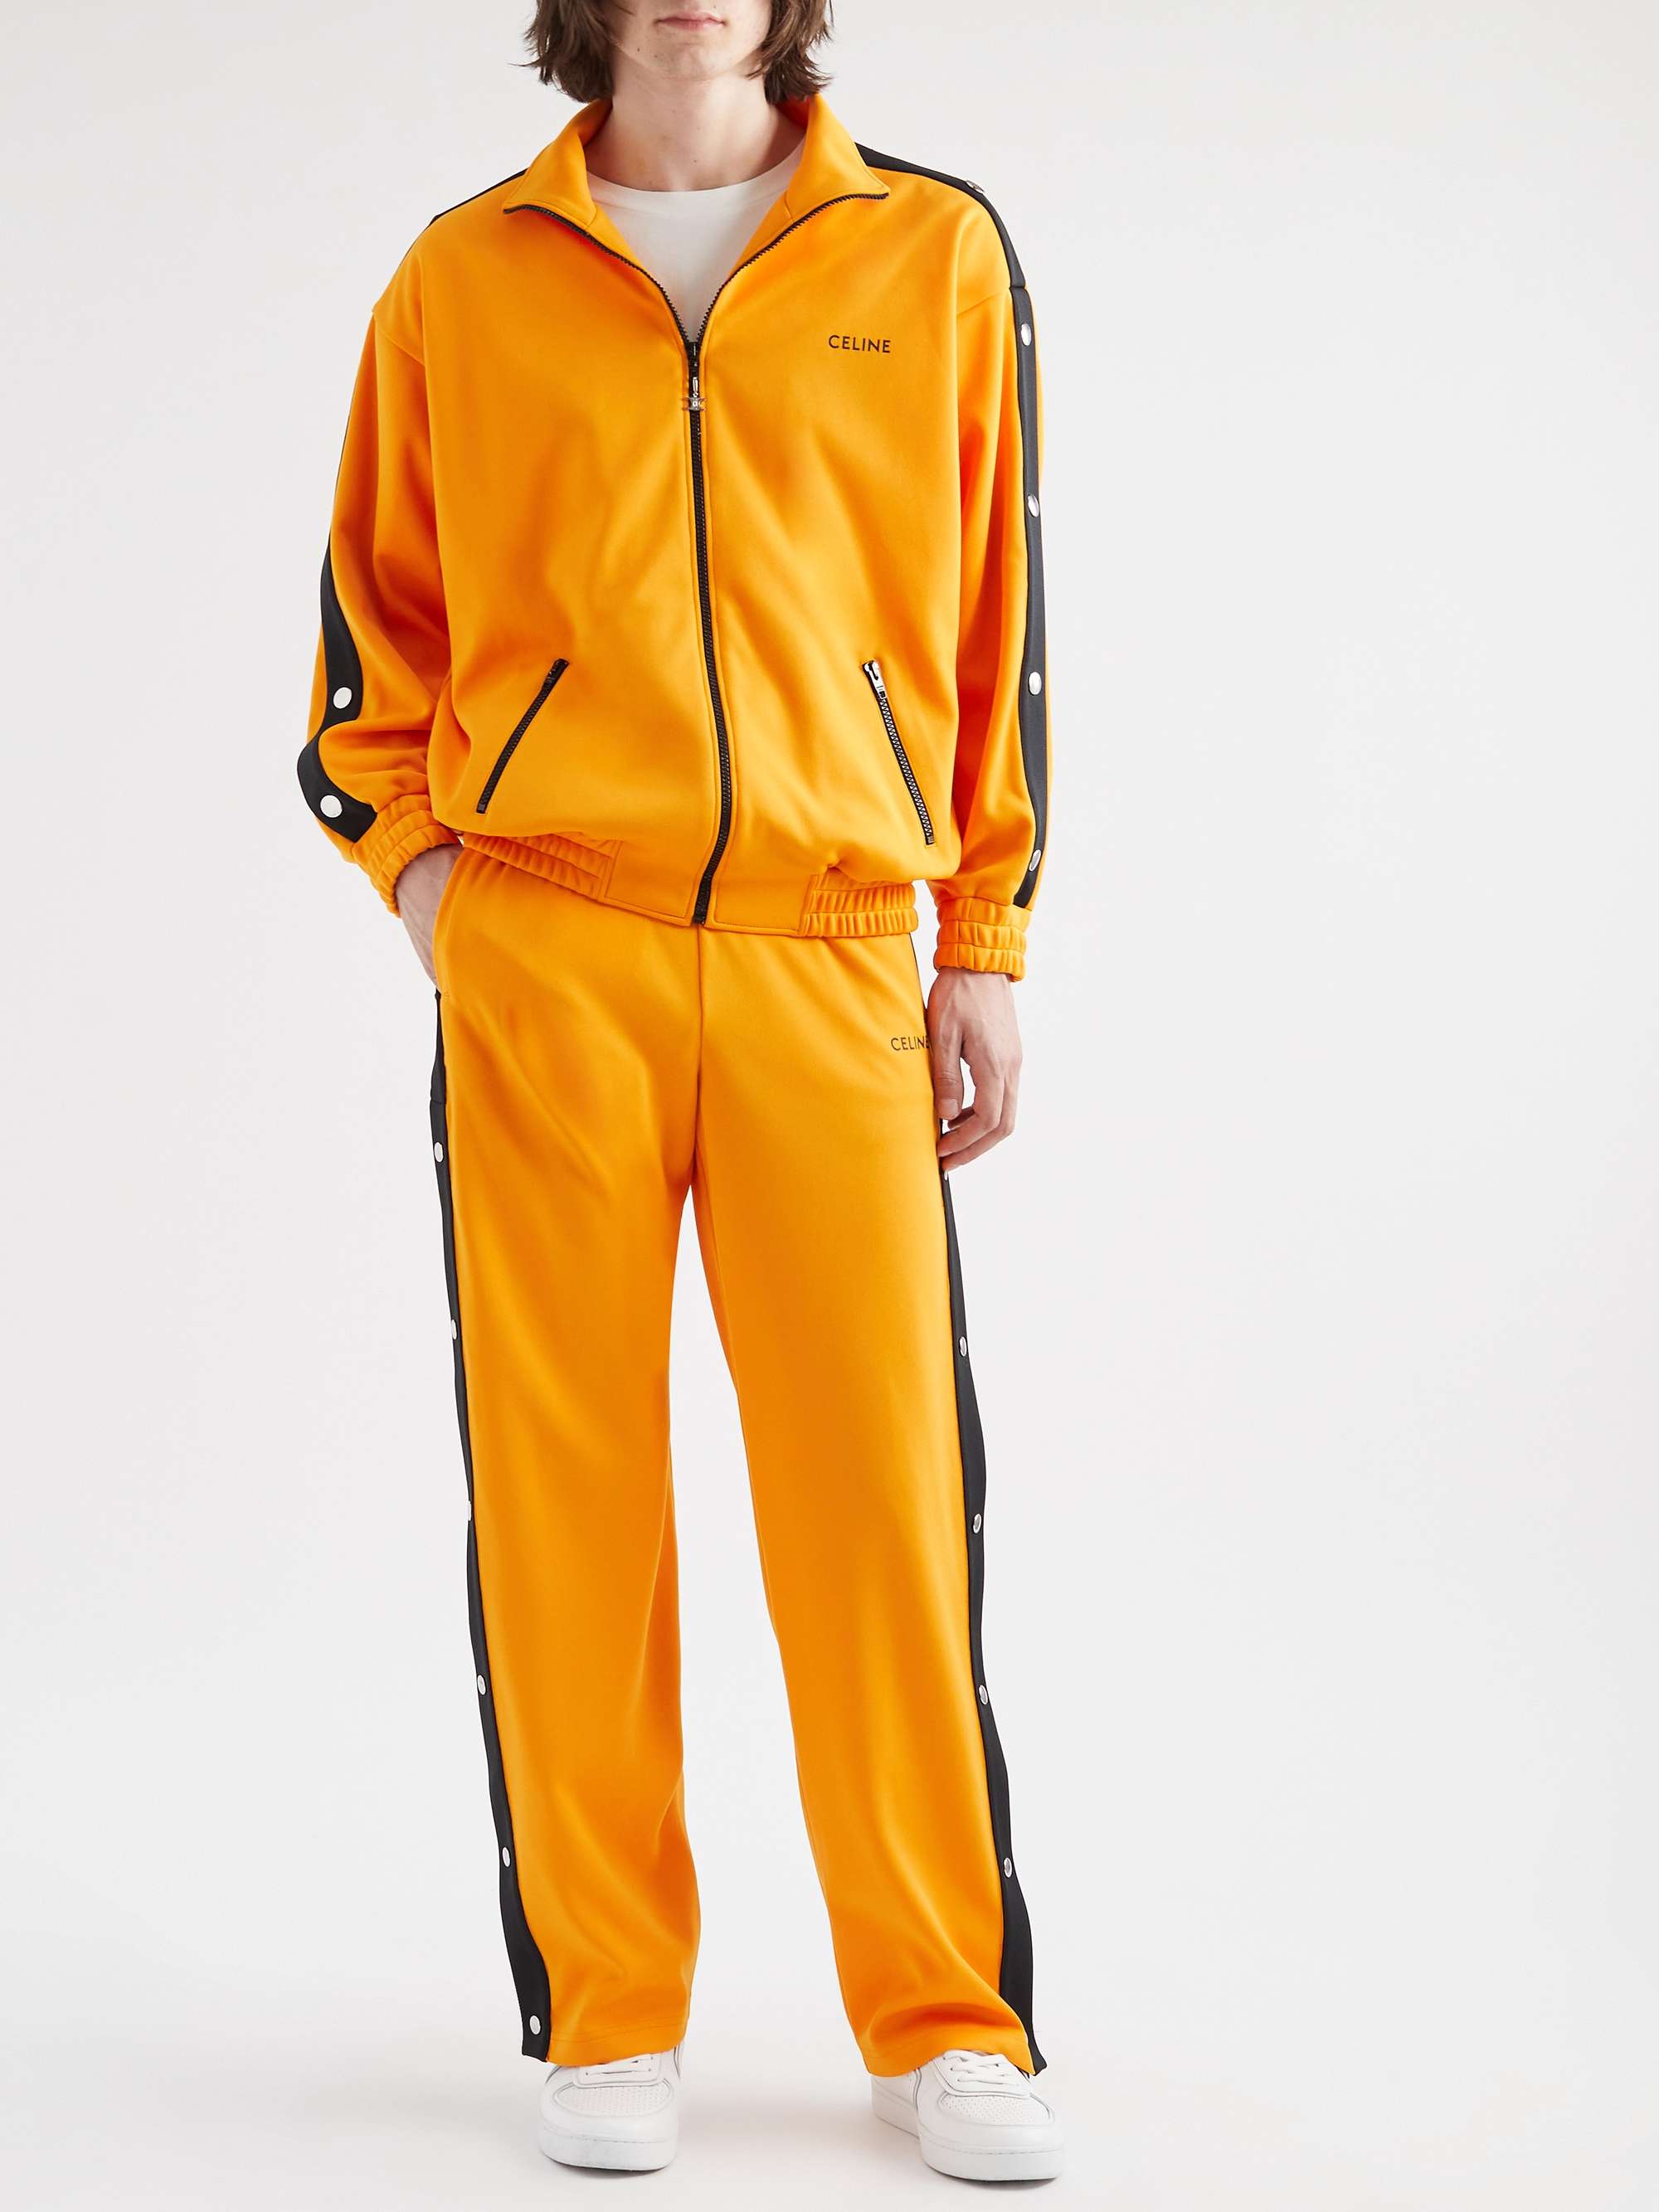 CELINE HOMME Studded Jersey Zip-Up Track Jacket for Men | MR PORTER